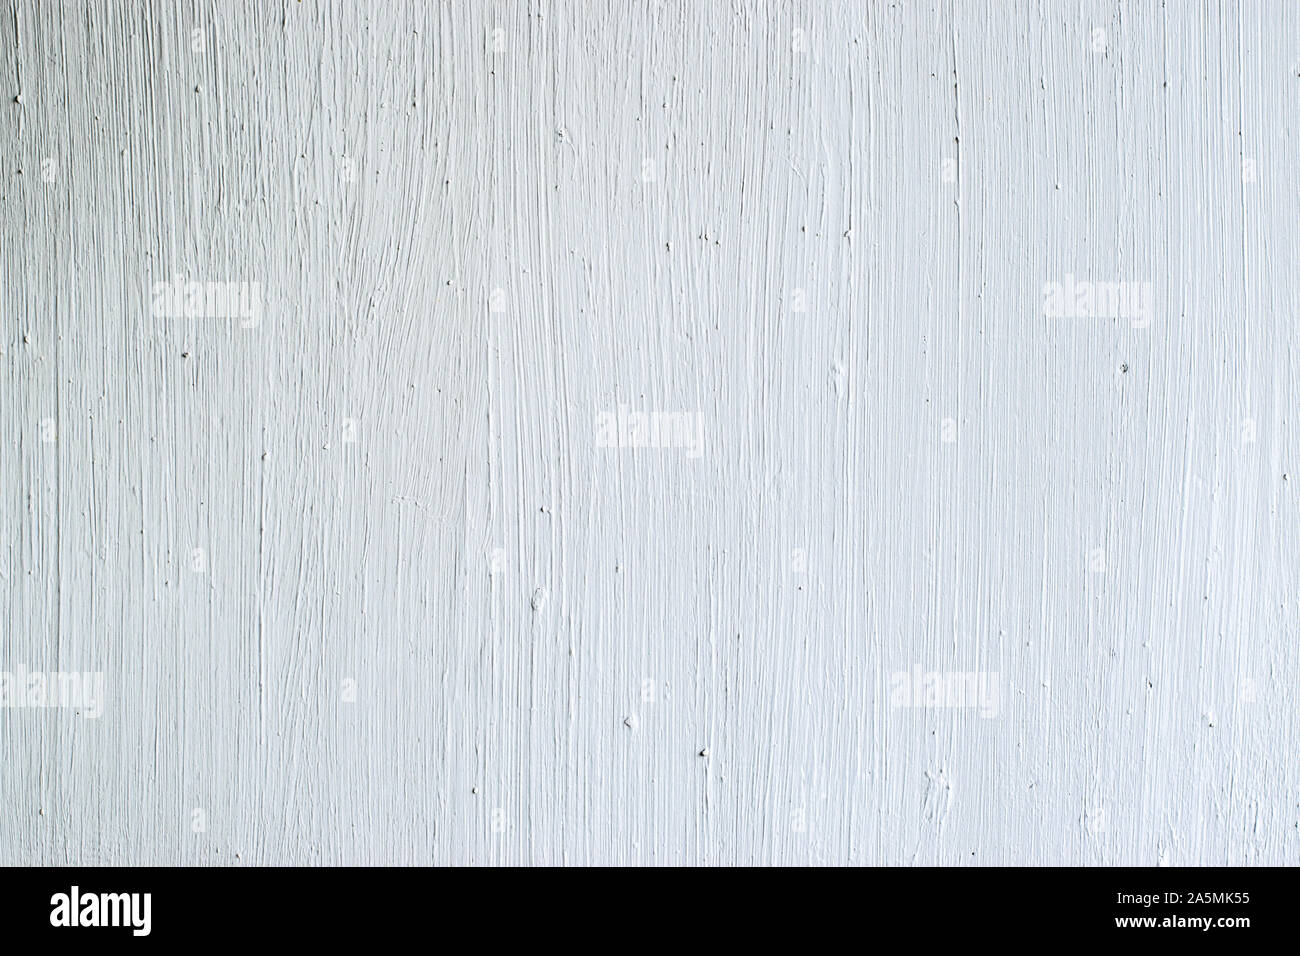 Paredes blancas de hormigón textura del fondo, pared con marcas de trazo de pintura Foto de stock